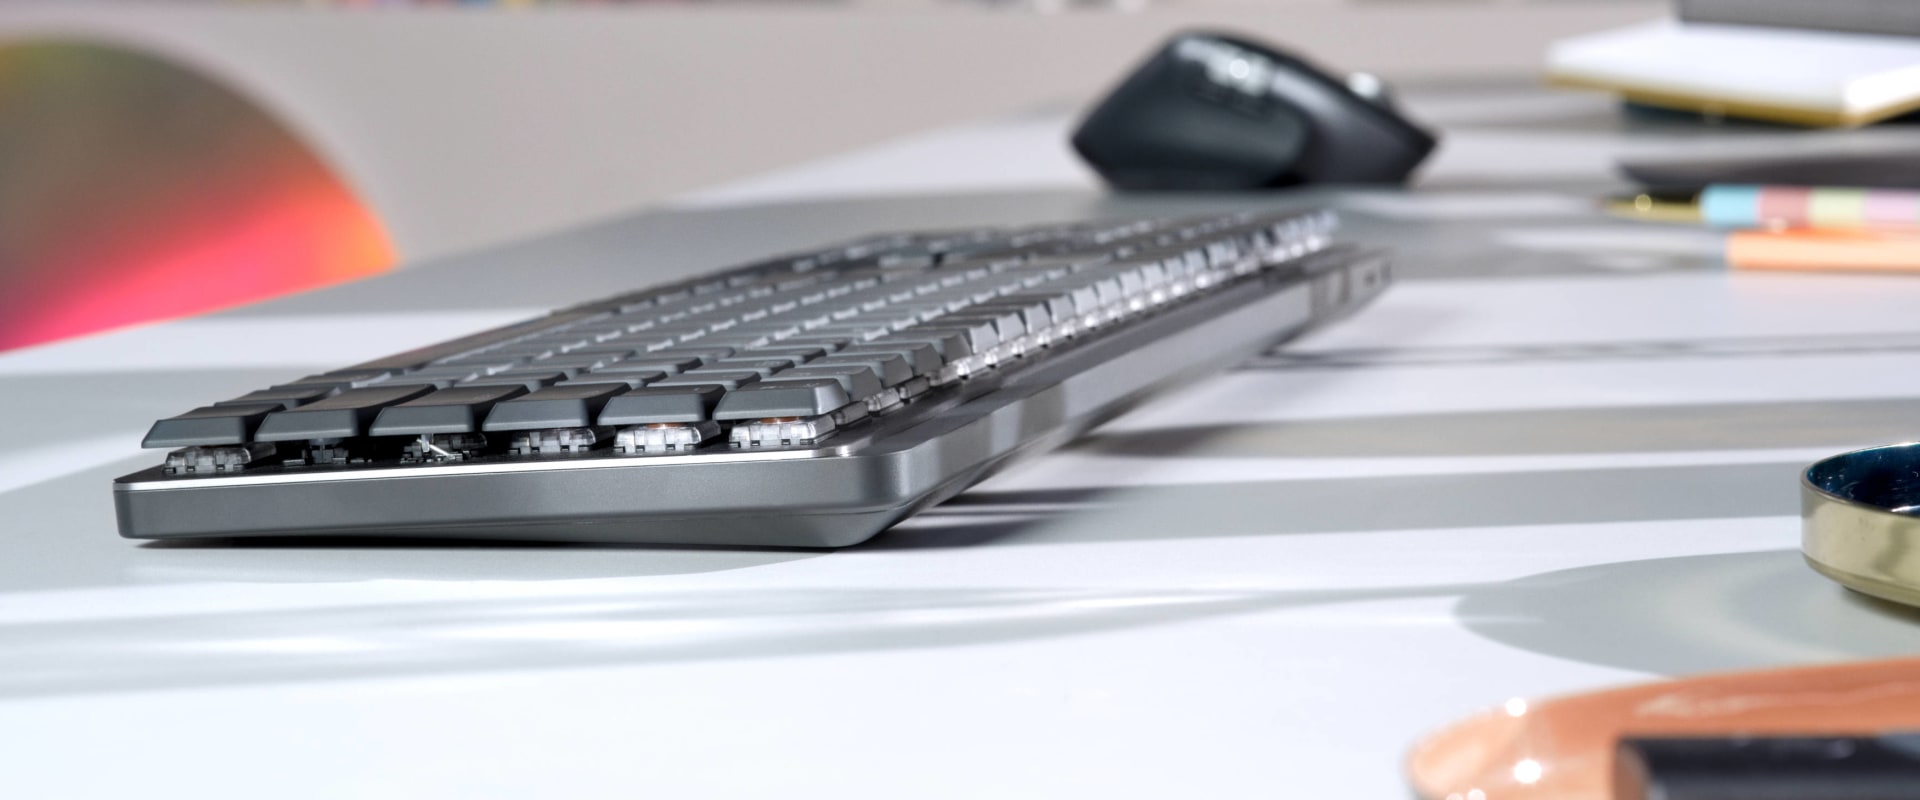 Sind kabellose Tastatur und Bluetooth-Tastatur dasselbe?